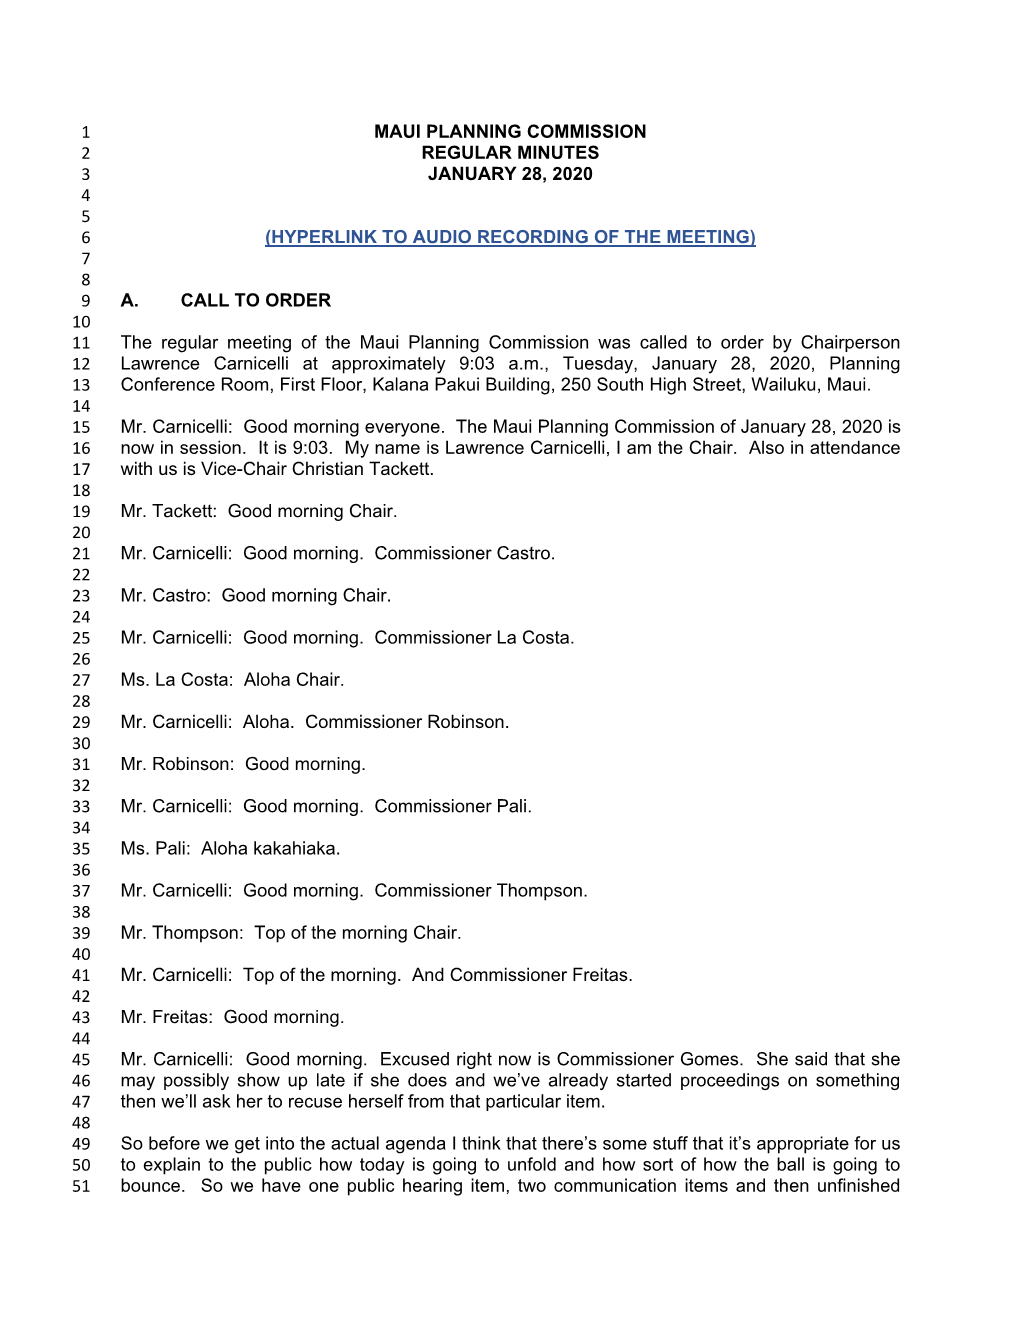 Maui Planning Commission 1 Regular Minutes 2 January 28, 2020 3